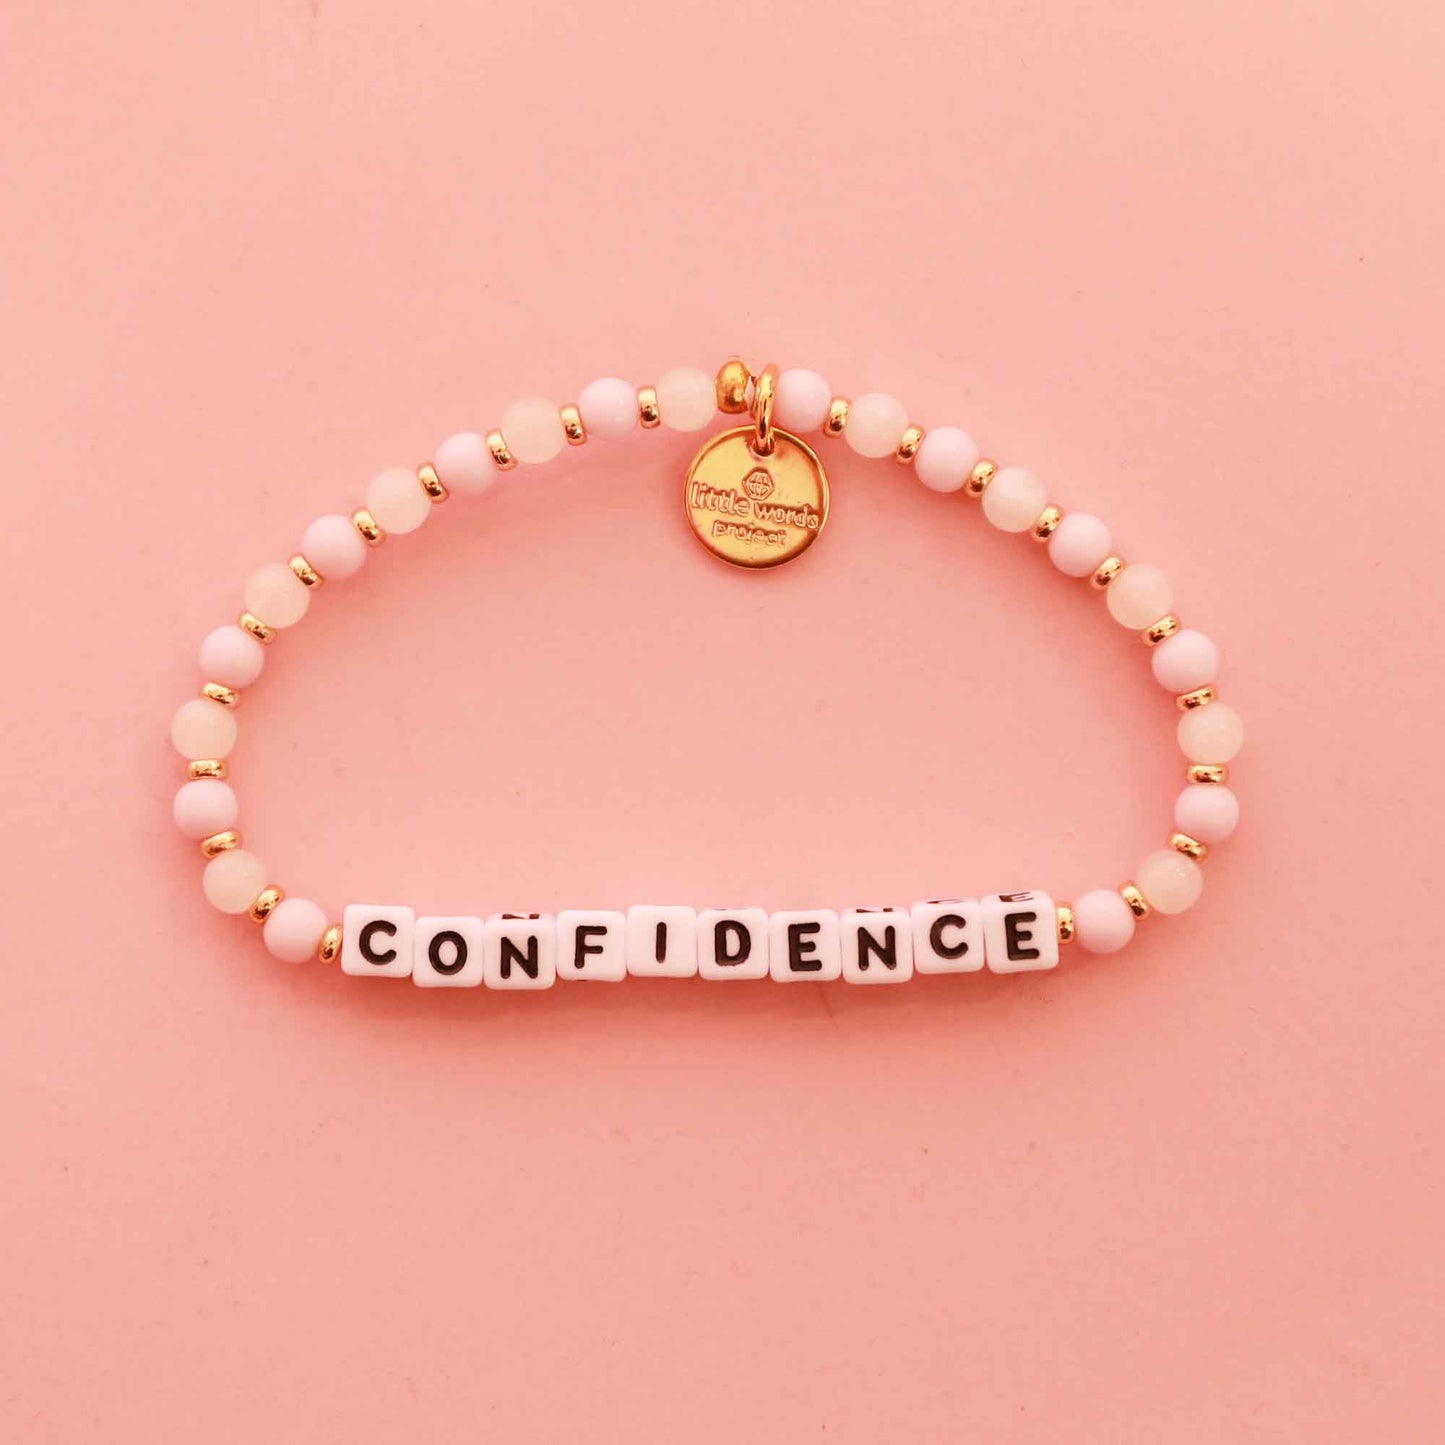 Little Words Project® "Confidence" Bracelet